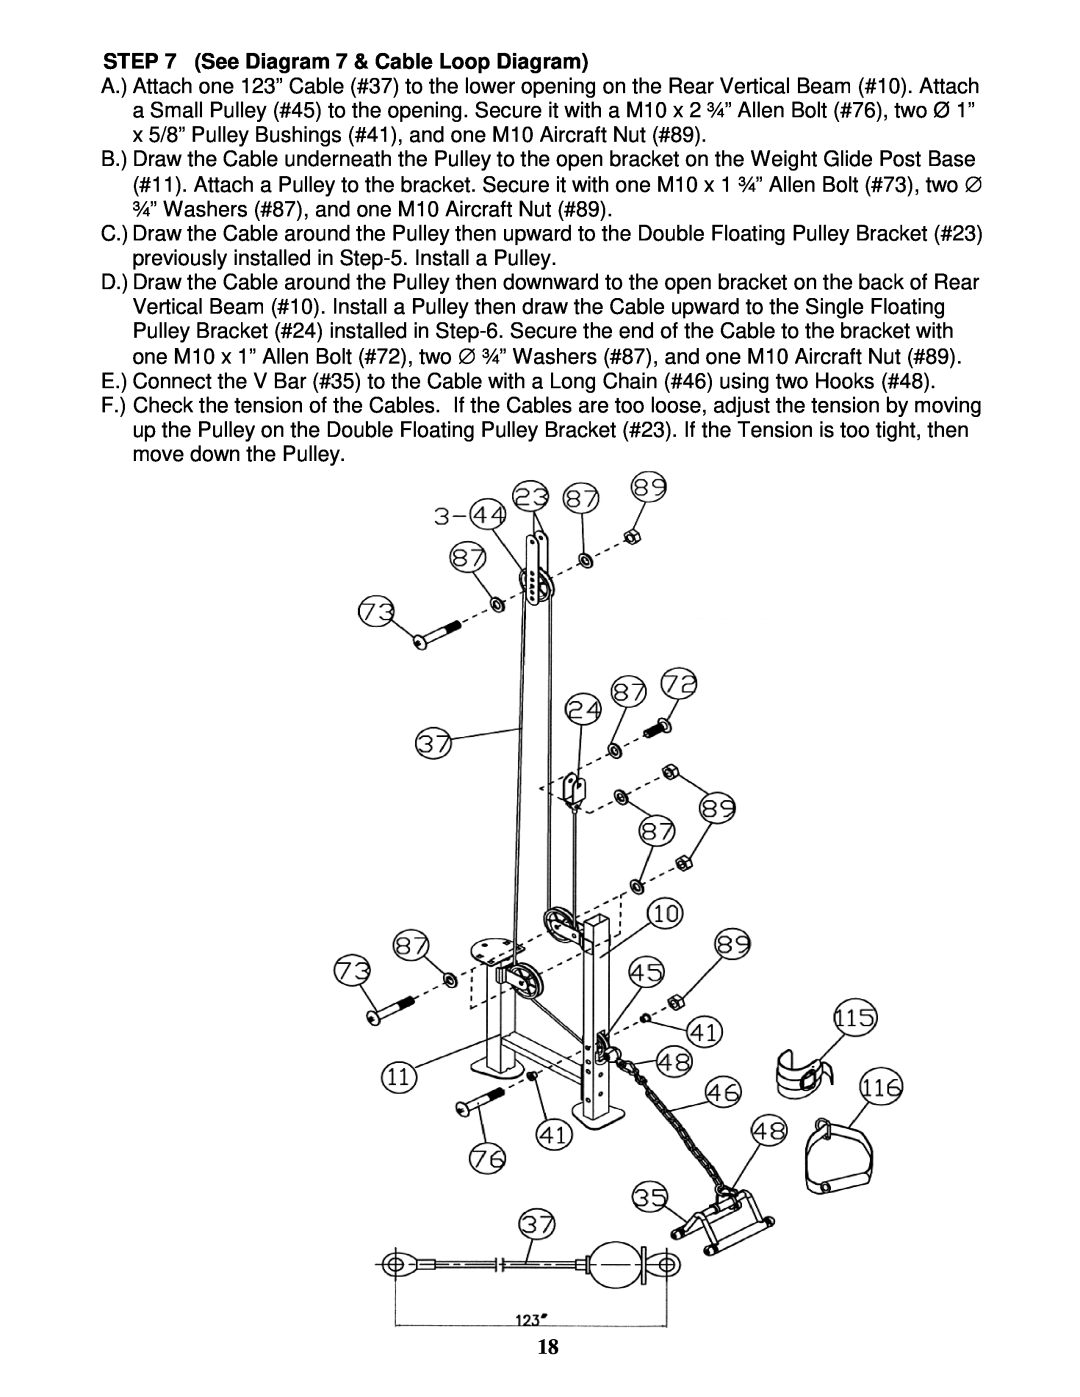 Impex MP-3105 manual See Diagram 7 & Cable Loop Diagram 